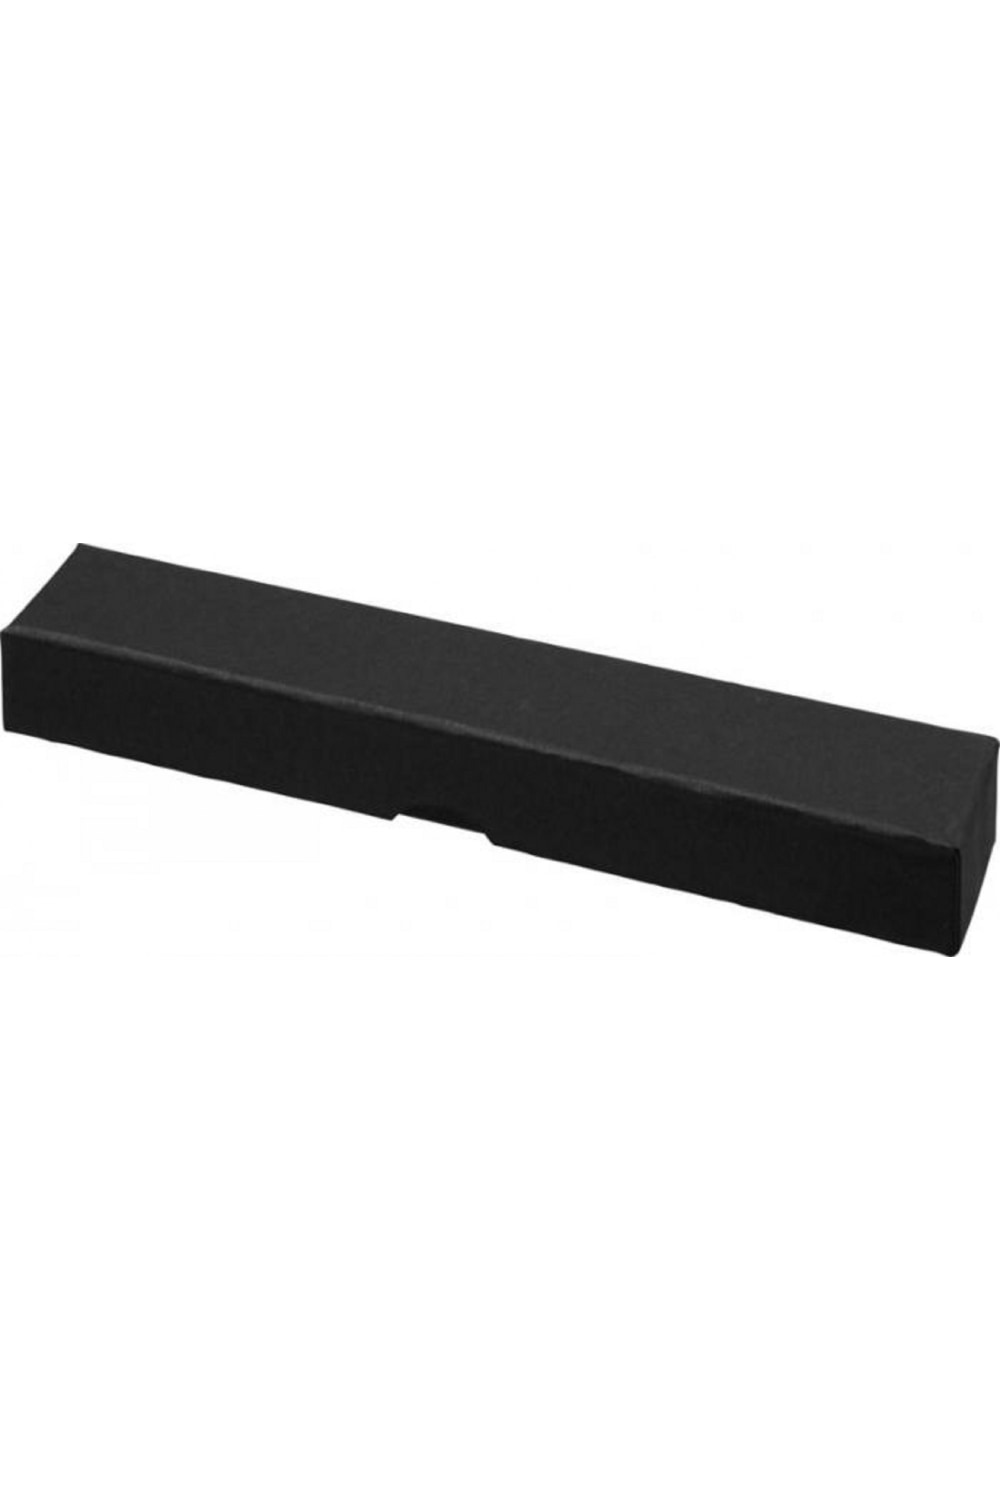 Bullet Slimline Pen Box (Black) (One Size)